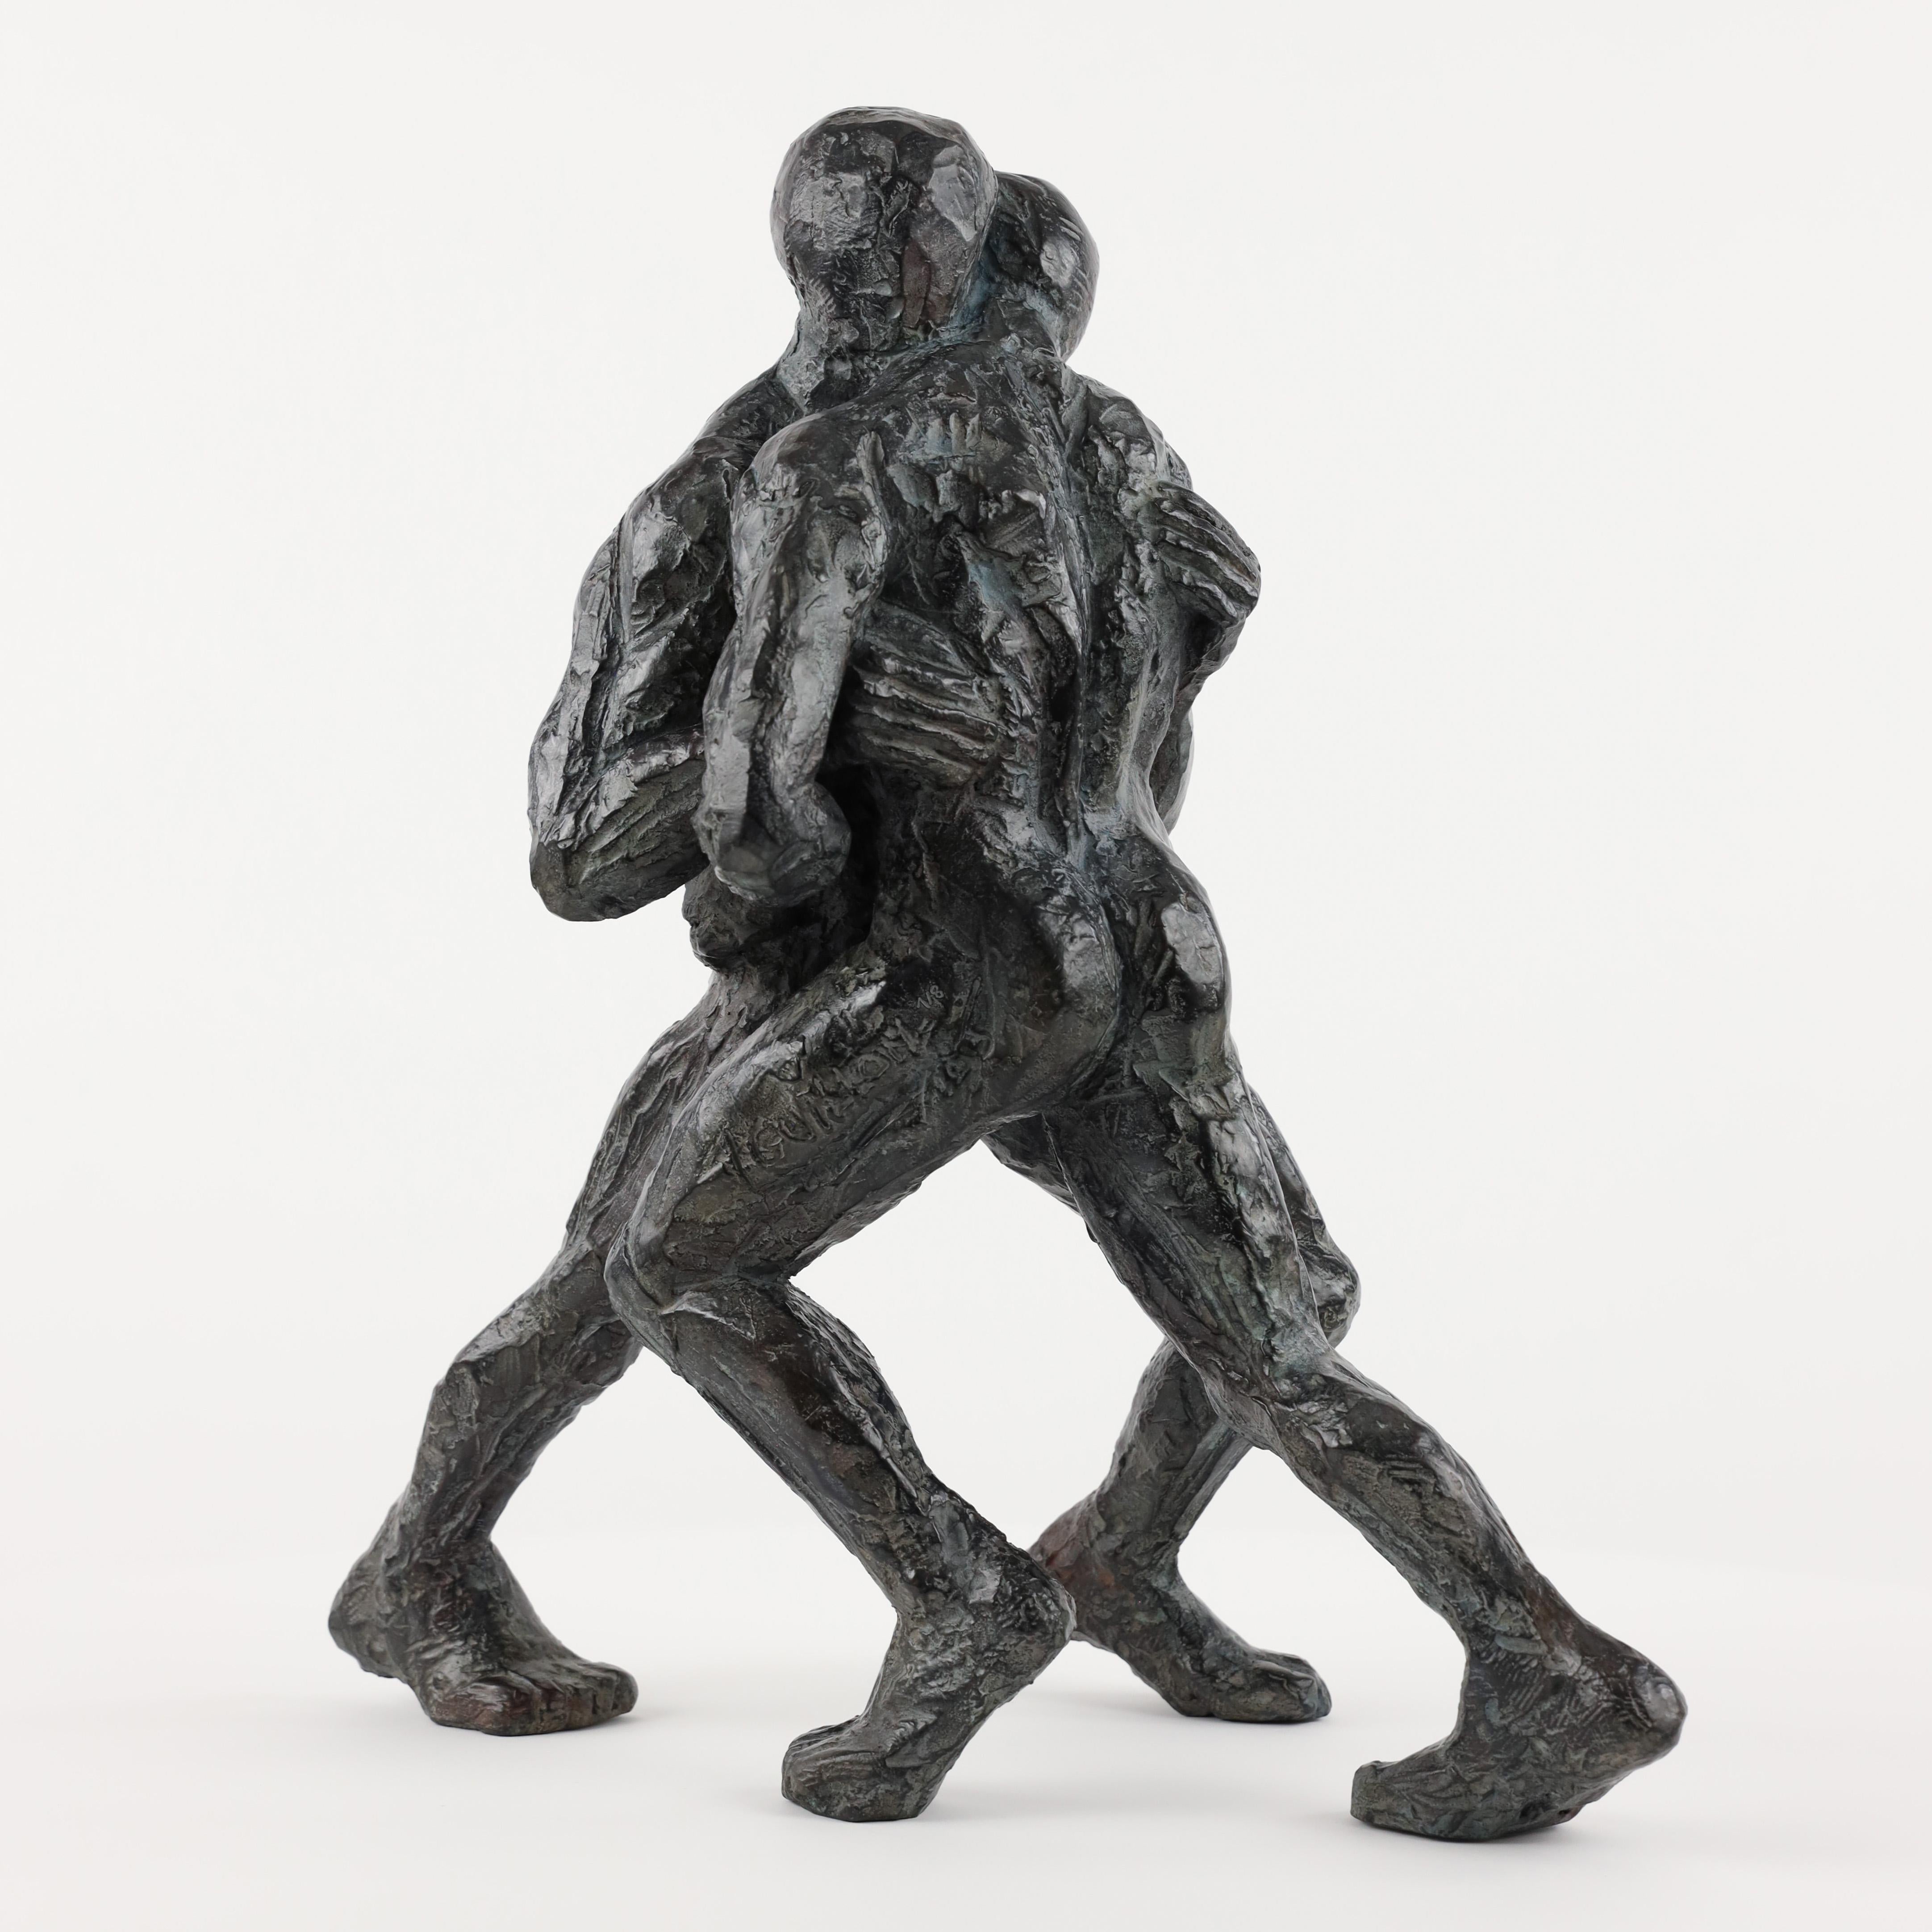 Wrestler VIII ist eine Bronzeskulptur des französischen zeitgenössischen Künstlers Yann Guillon mit den Maßen 47 × 44 × 29 cm (18,5 × 17,3 × 11,4 in). 
Diese Skulptur ist signiert und nummeriert, sie gehört zu einer limitierten Auflage von 8